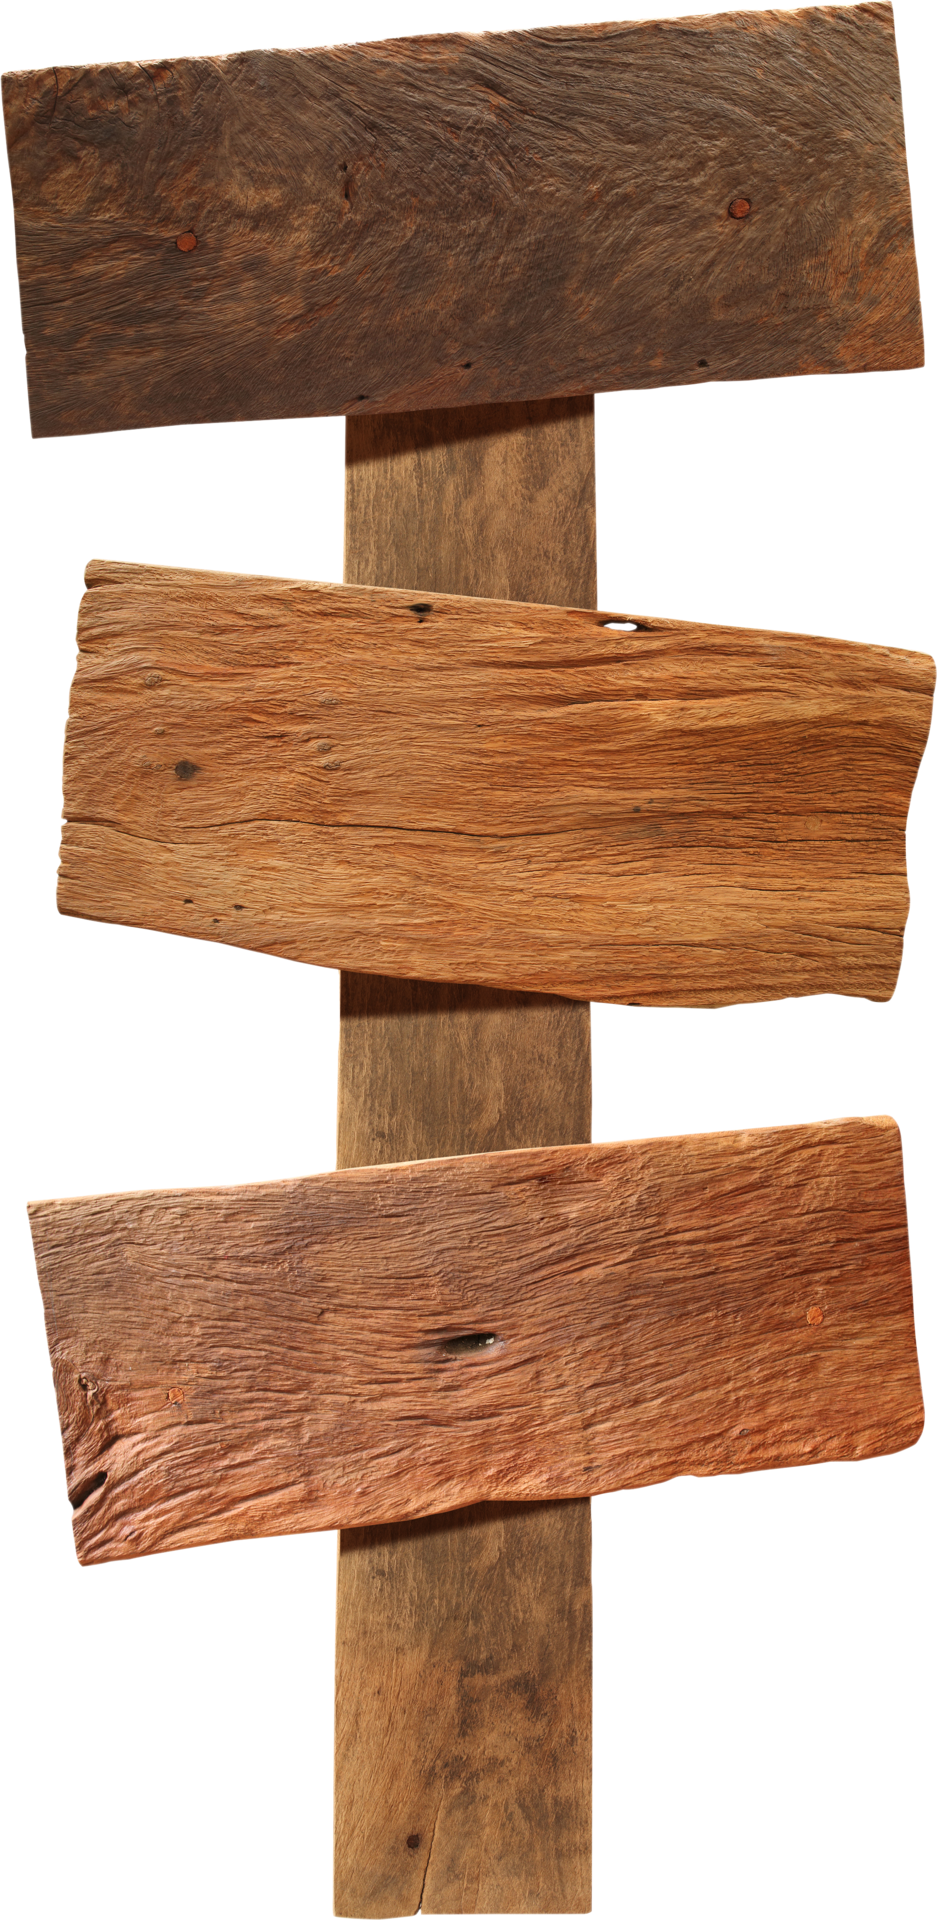 Biển báo gỗ miễn phí là một tin vui cho những người đam mê DIY hay dựng hình ảnh quảng cáo online. Với đa dạng về kiểu dáng, bạn sẽ không còn lo ngại về chi phí đắt đỏ khi muốn sử dụng khuôn mẫu này.